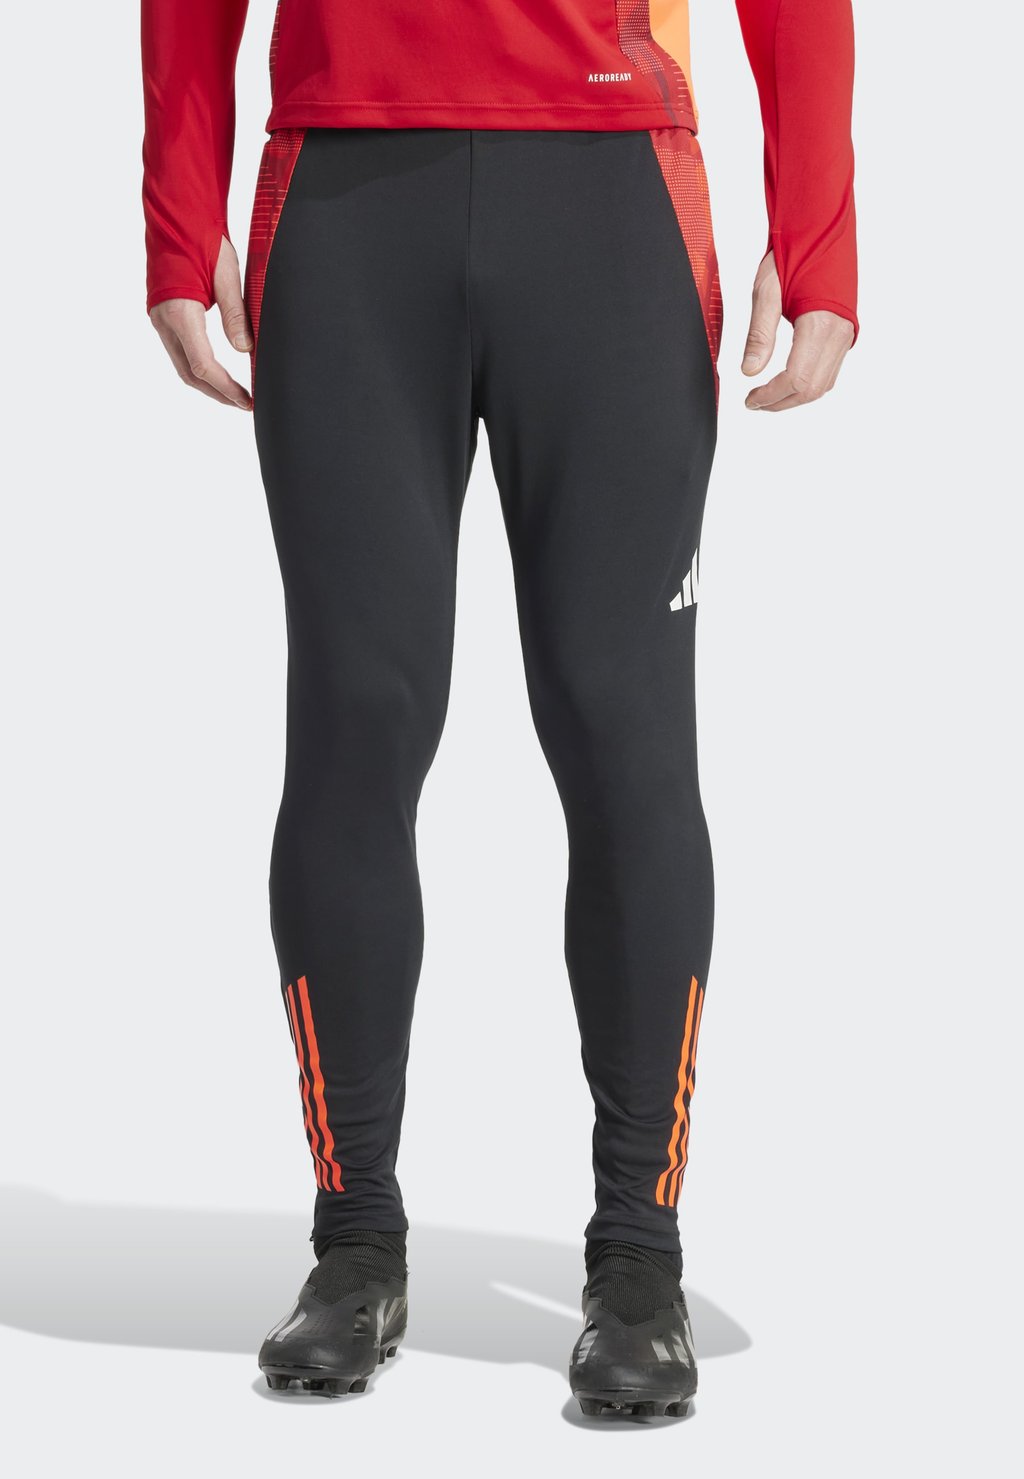 Спортивные брюки Tiro24 Competition Adidas, цвет black app solar red app